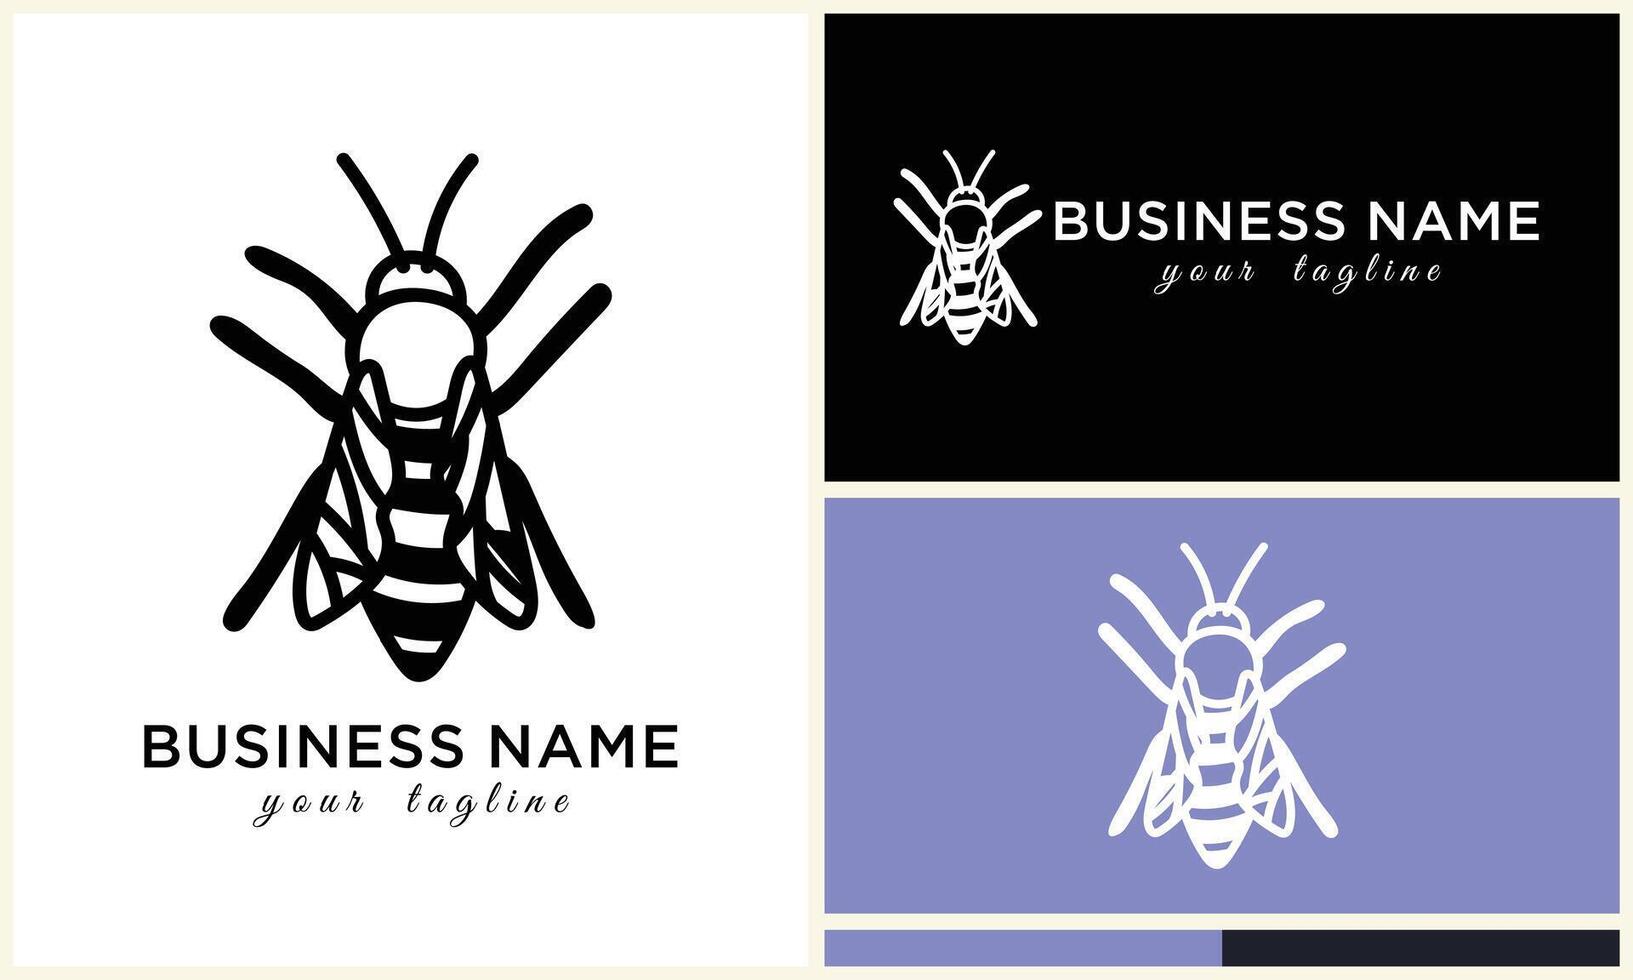 silhouette vecteur abeille logo modèle